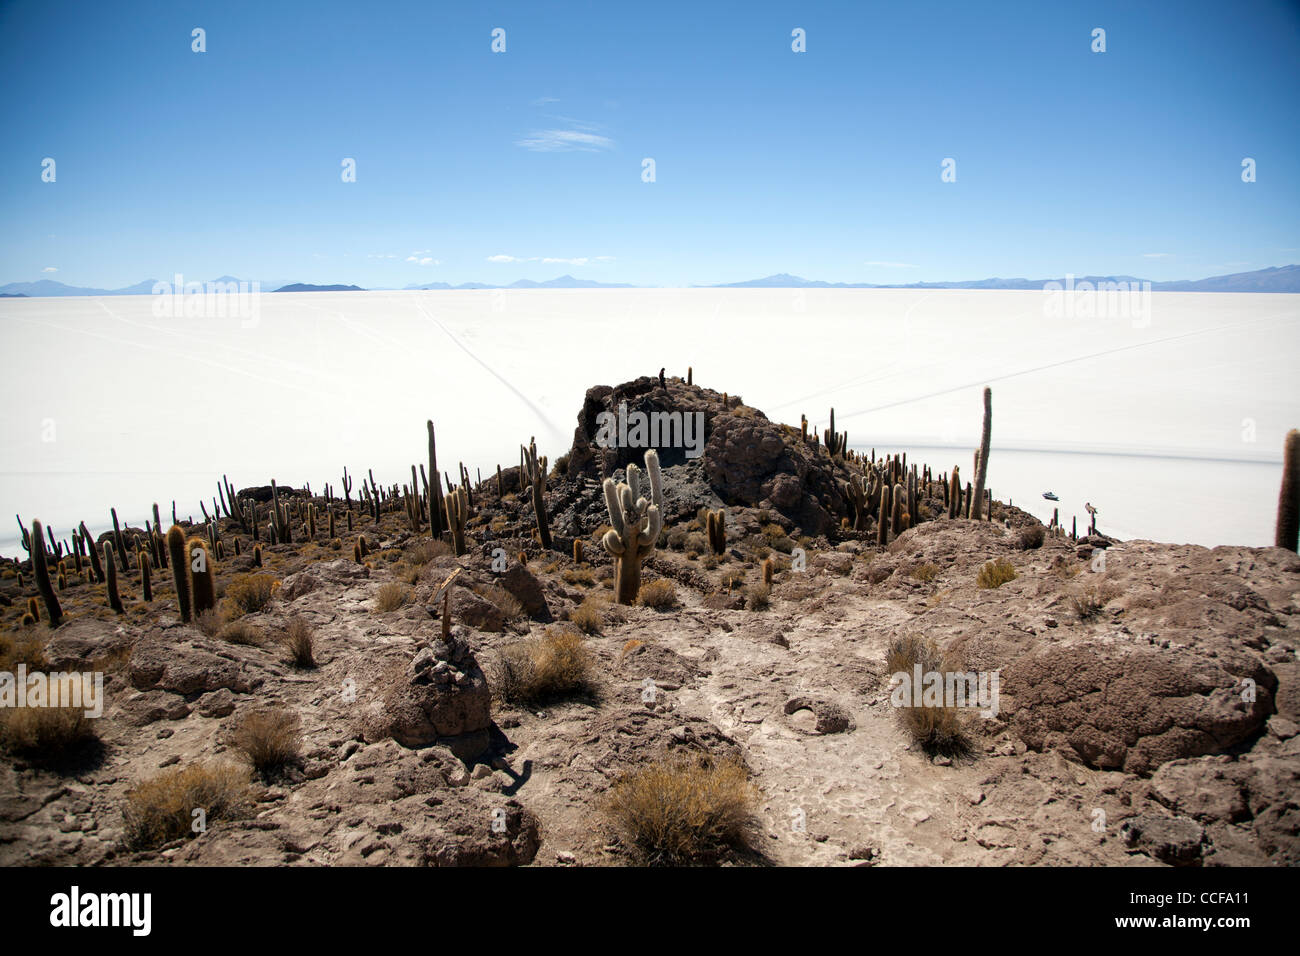 La Isla Incahuasi, o la Isla de los cactus, en Bolivia el Salar de Uyuni, el salar más grande del mundo y los principales sitios turísticos. Foto de stock